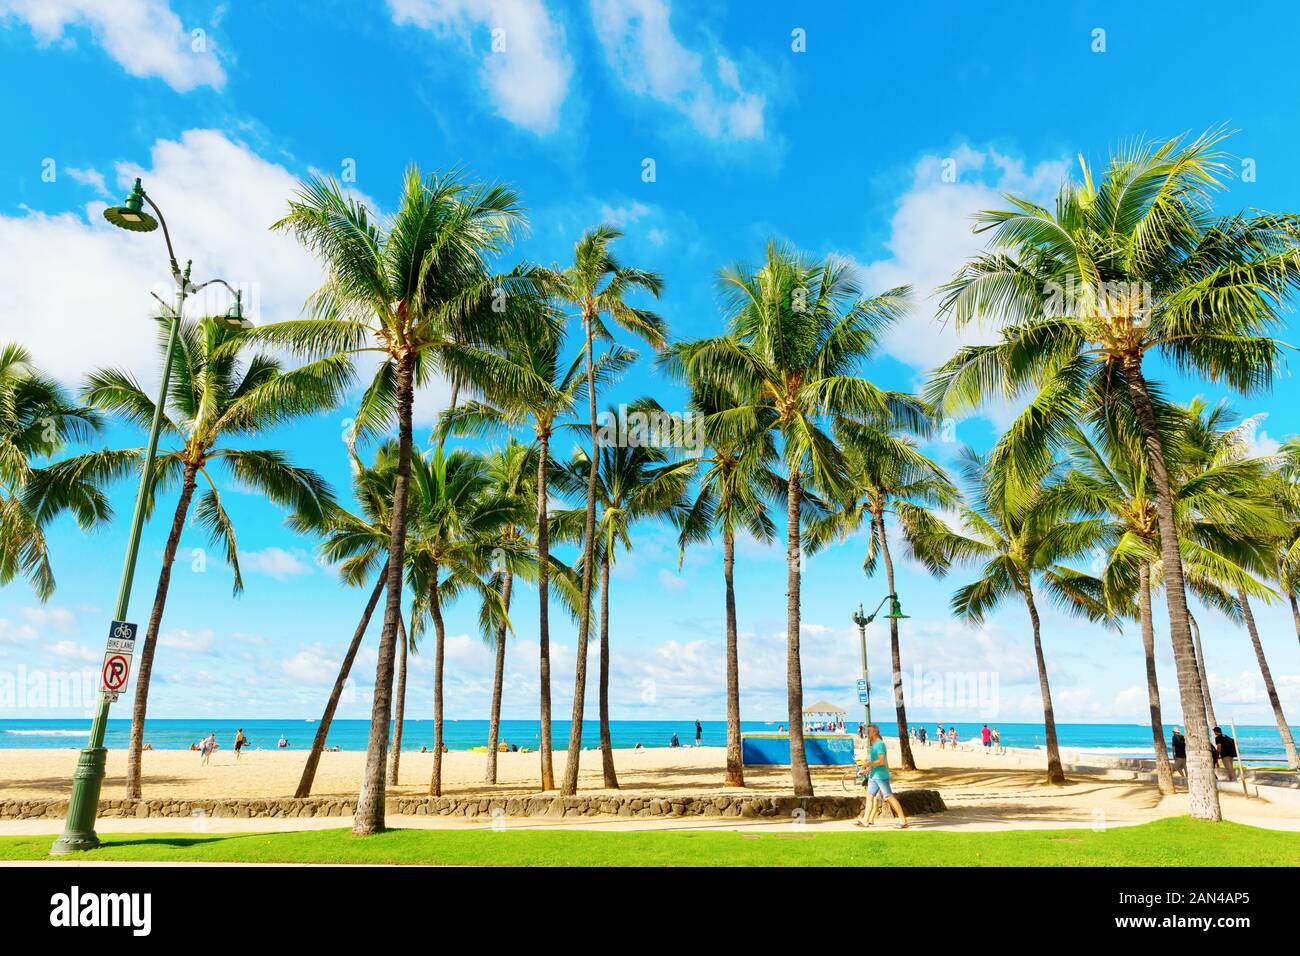 Honolulu, Oahu, Hawaii - Novembre 04, 2019 Kuhio Beach : parc avec des personnes non identifiées. C'est un parc public situé à côté de l'océan à l'intérieur de la plage de Waikiki Banque D'Images